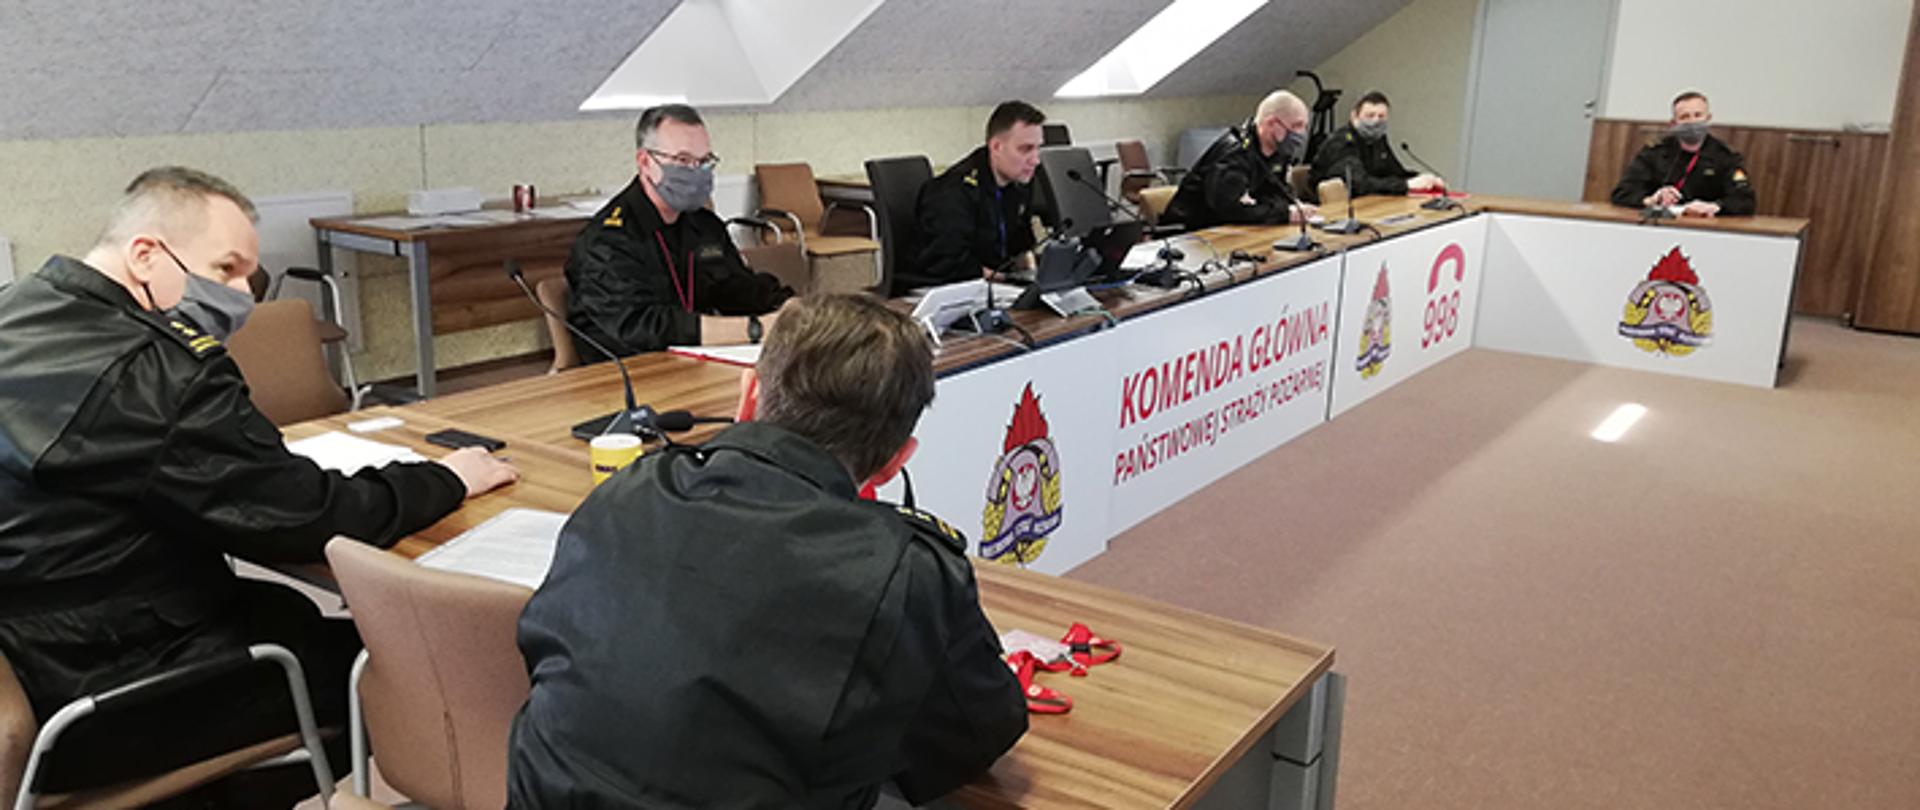 Strażacy w mundurach dowódczo-sztabowych, siedzący przy stole podczas wideokonferencji